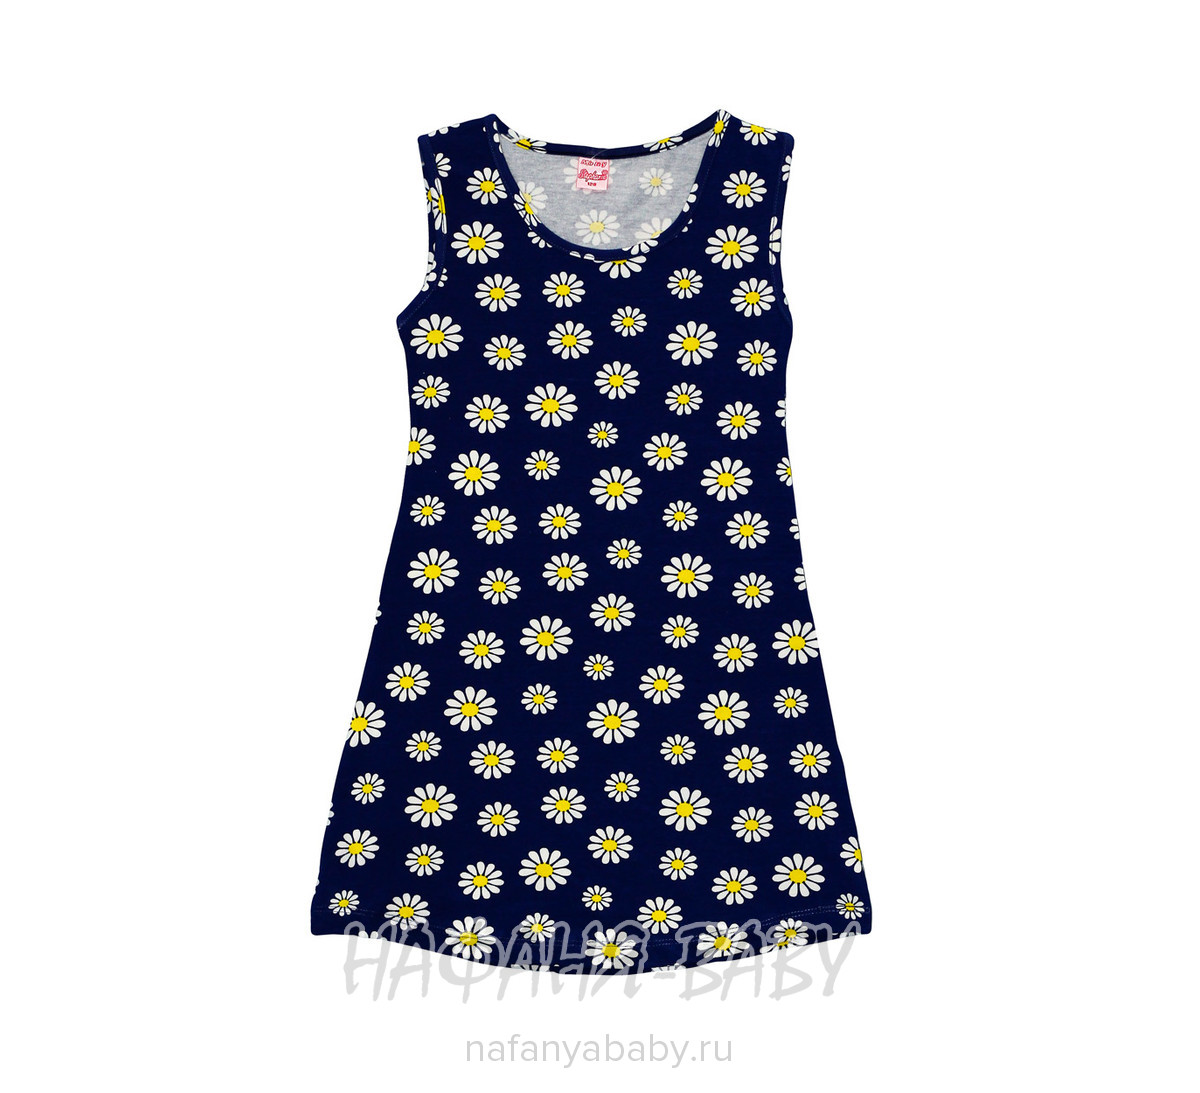 Детское платье STEPHANIE, купить в интернет магазине Нафаня. арт: 9030.